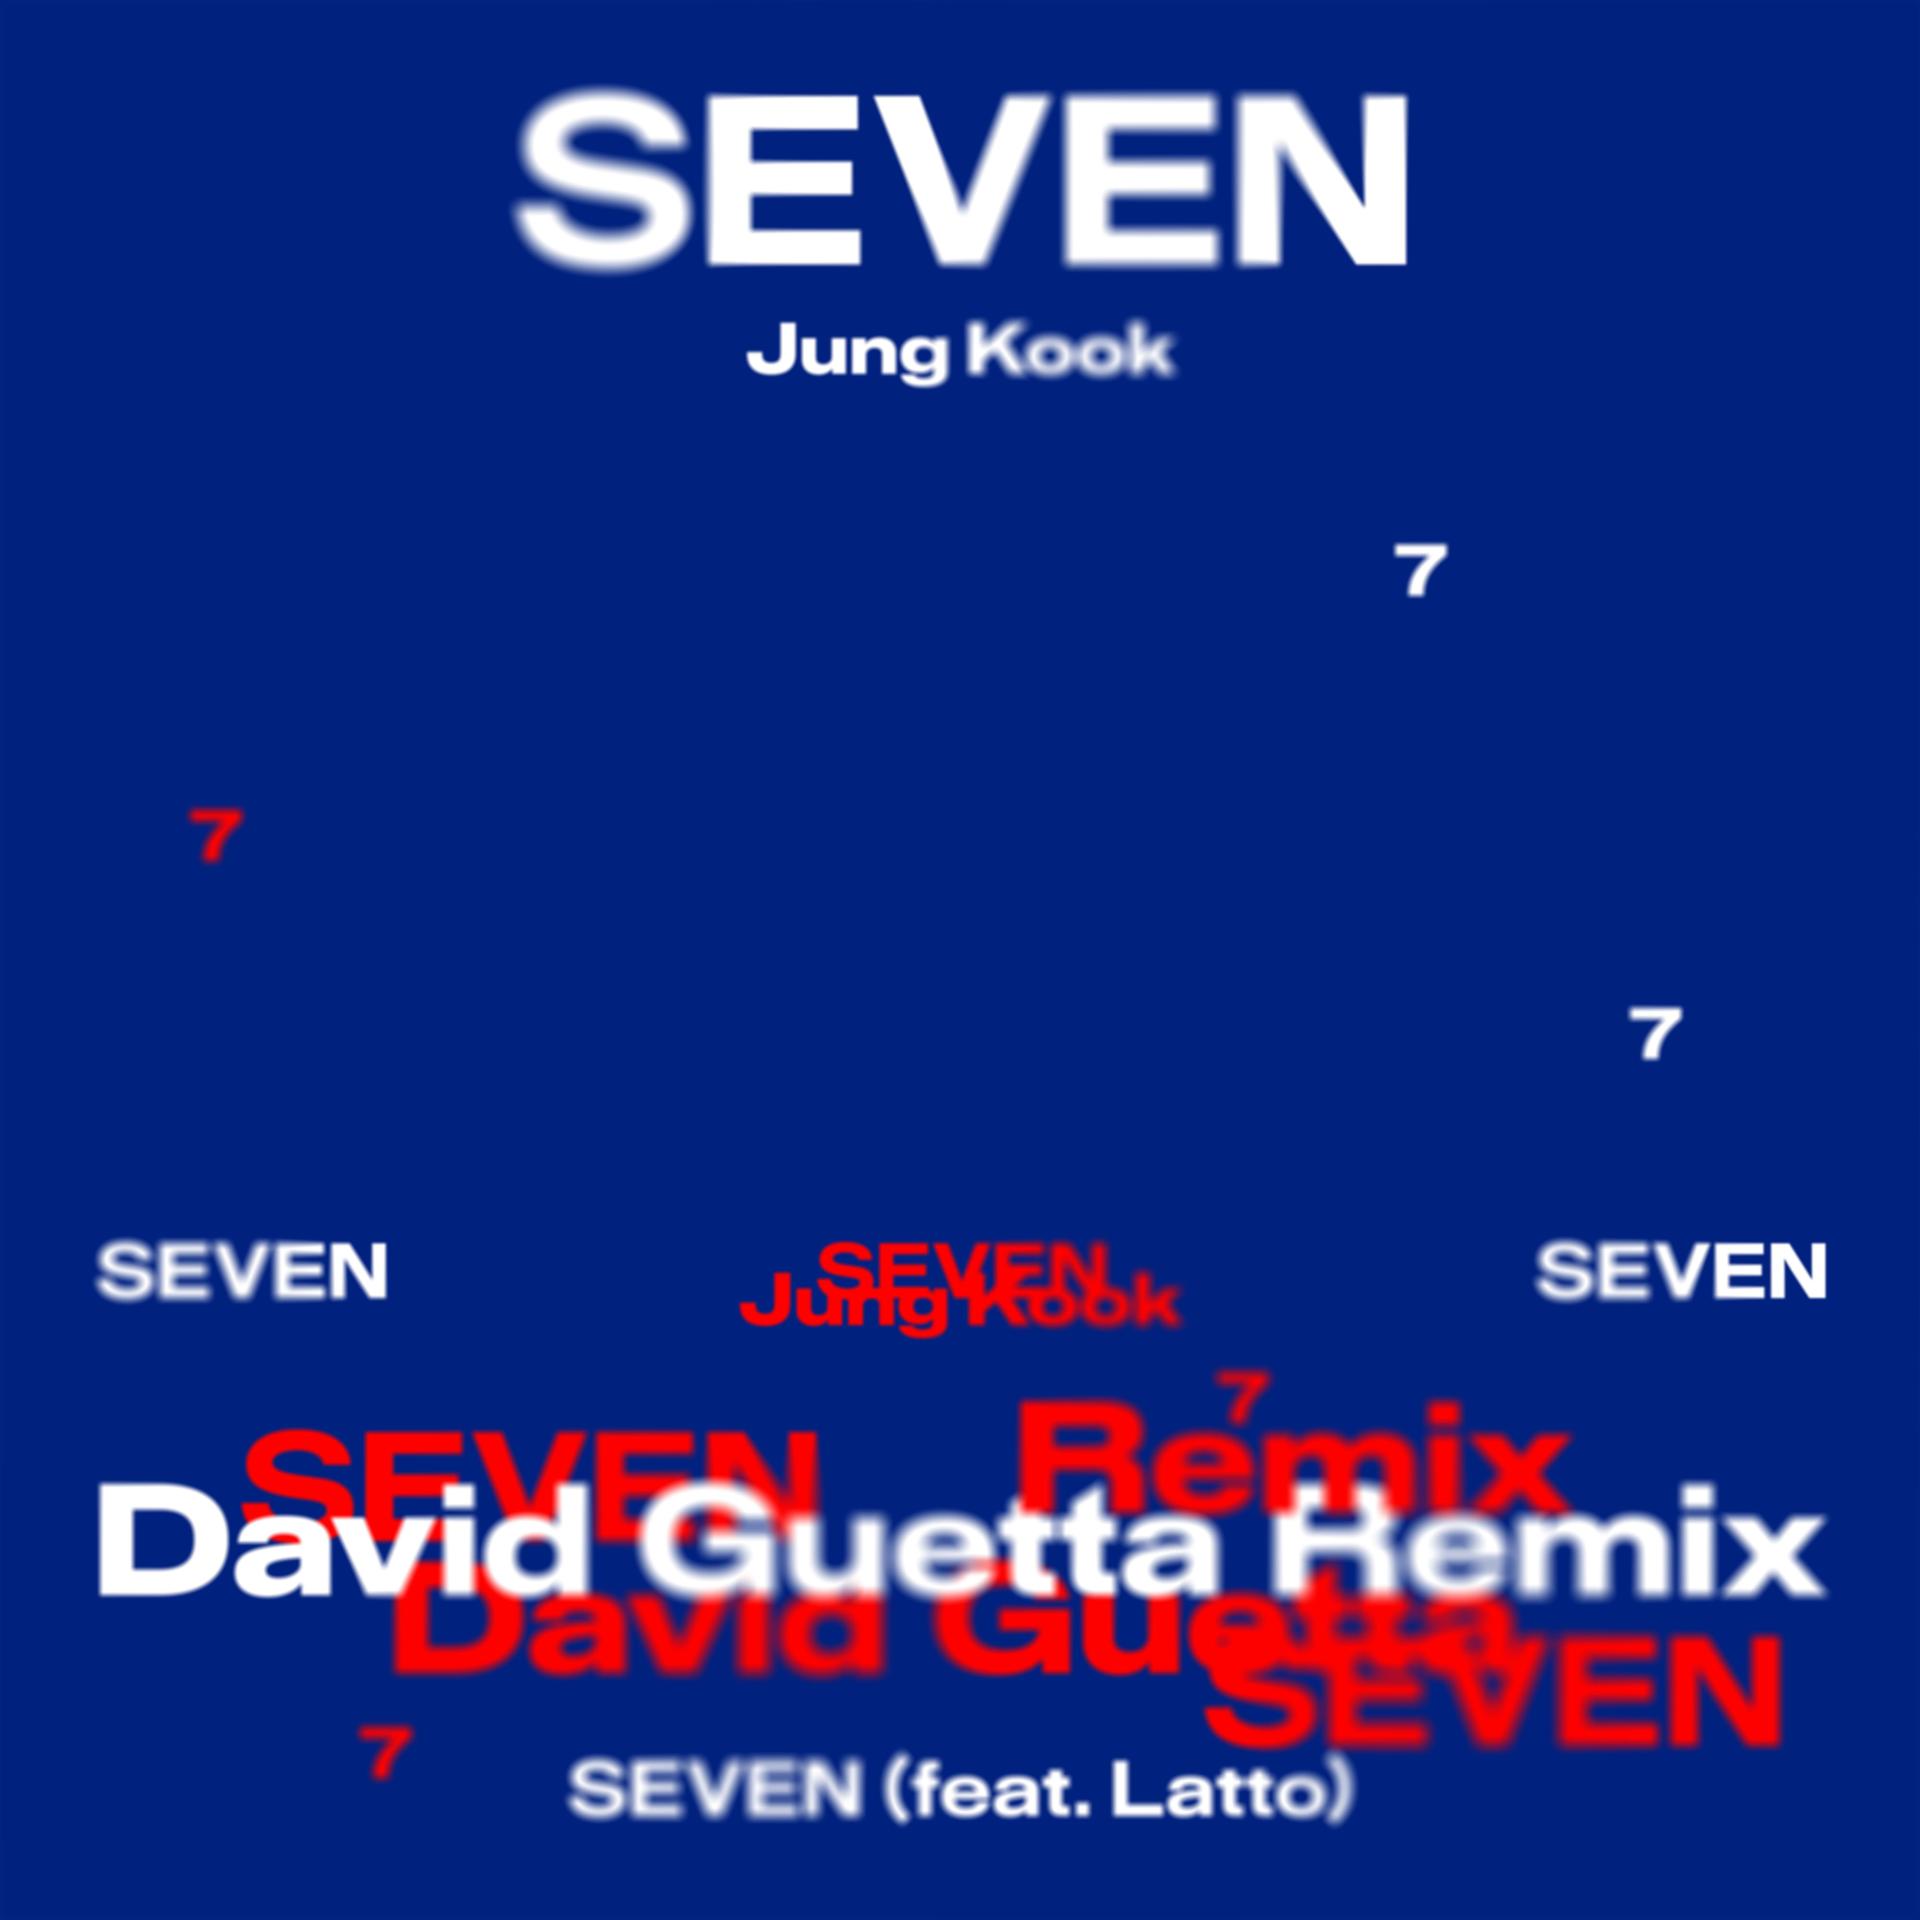 [Notice] Jungkook ‘Seven (feat. Latto) - David Guetta Remix’ / ‘3D (feat. Jack Harlow) - MK Remix’ release announcement (+ENG/JPN/CHN) - 281023